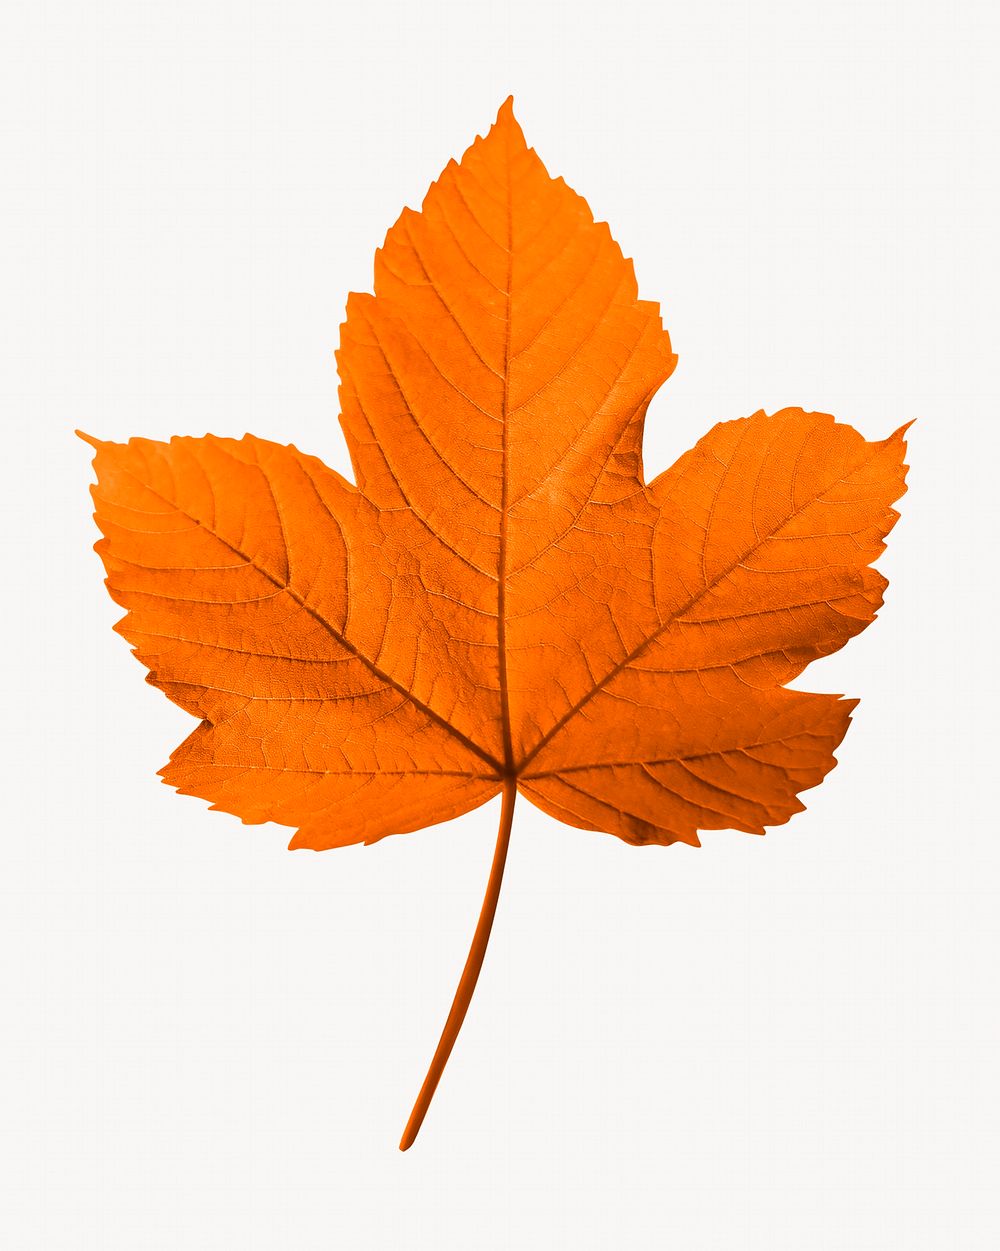 Maple leaf, Autumn aesthetic isolated image